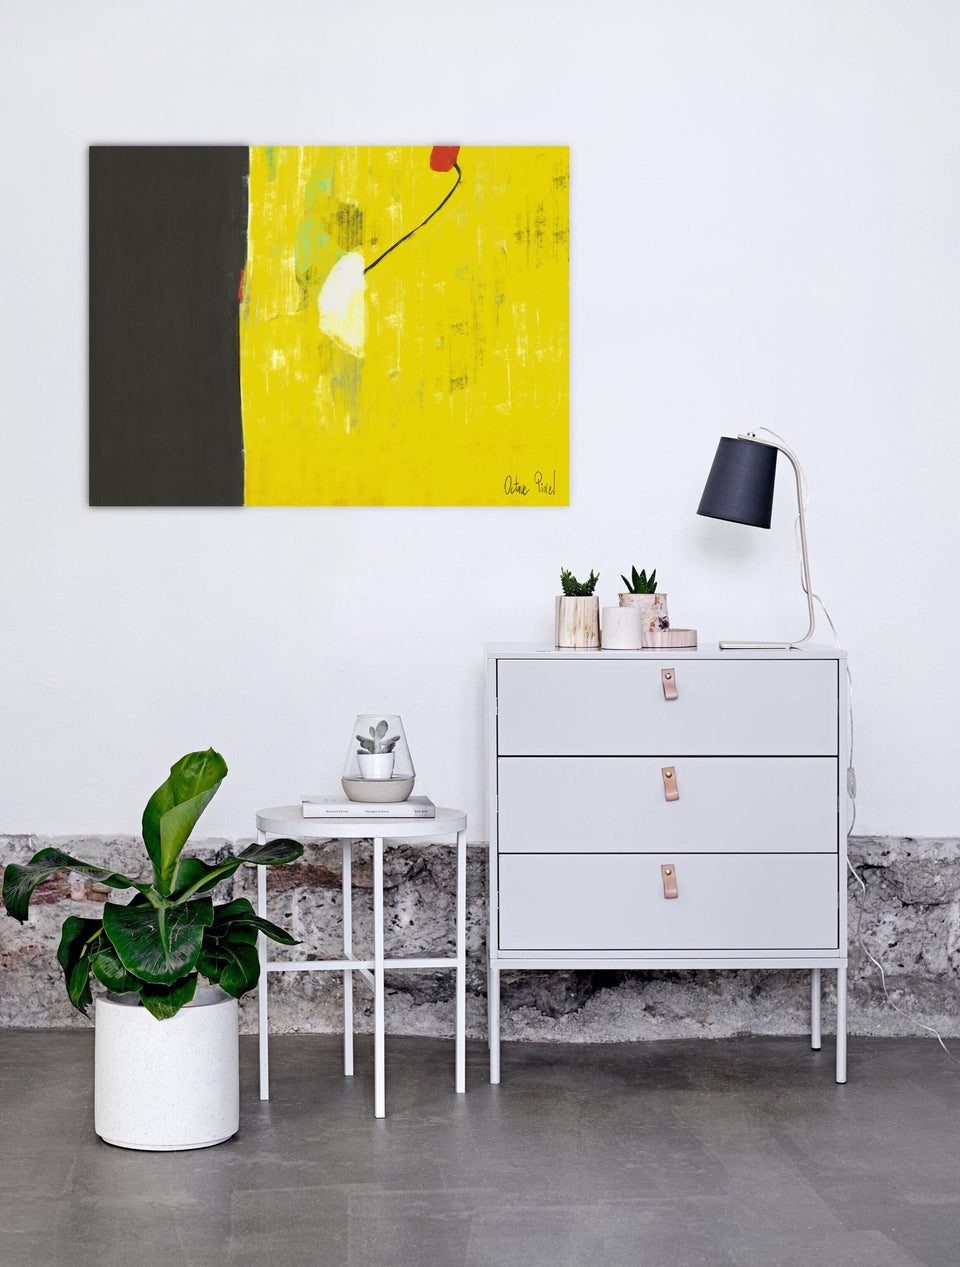  Cœur battant - peinture moderne jaune gris noir - Tableau contemporain  artiste peintre Octave Pixel  galerie TACT Art abstrait & contemporain